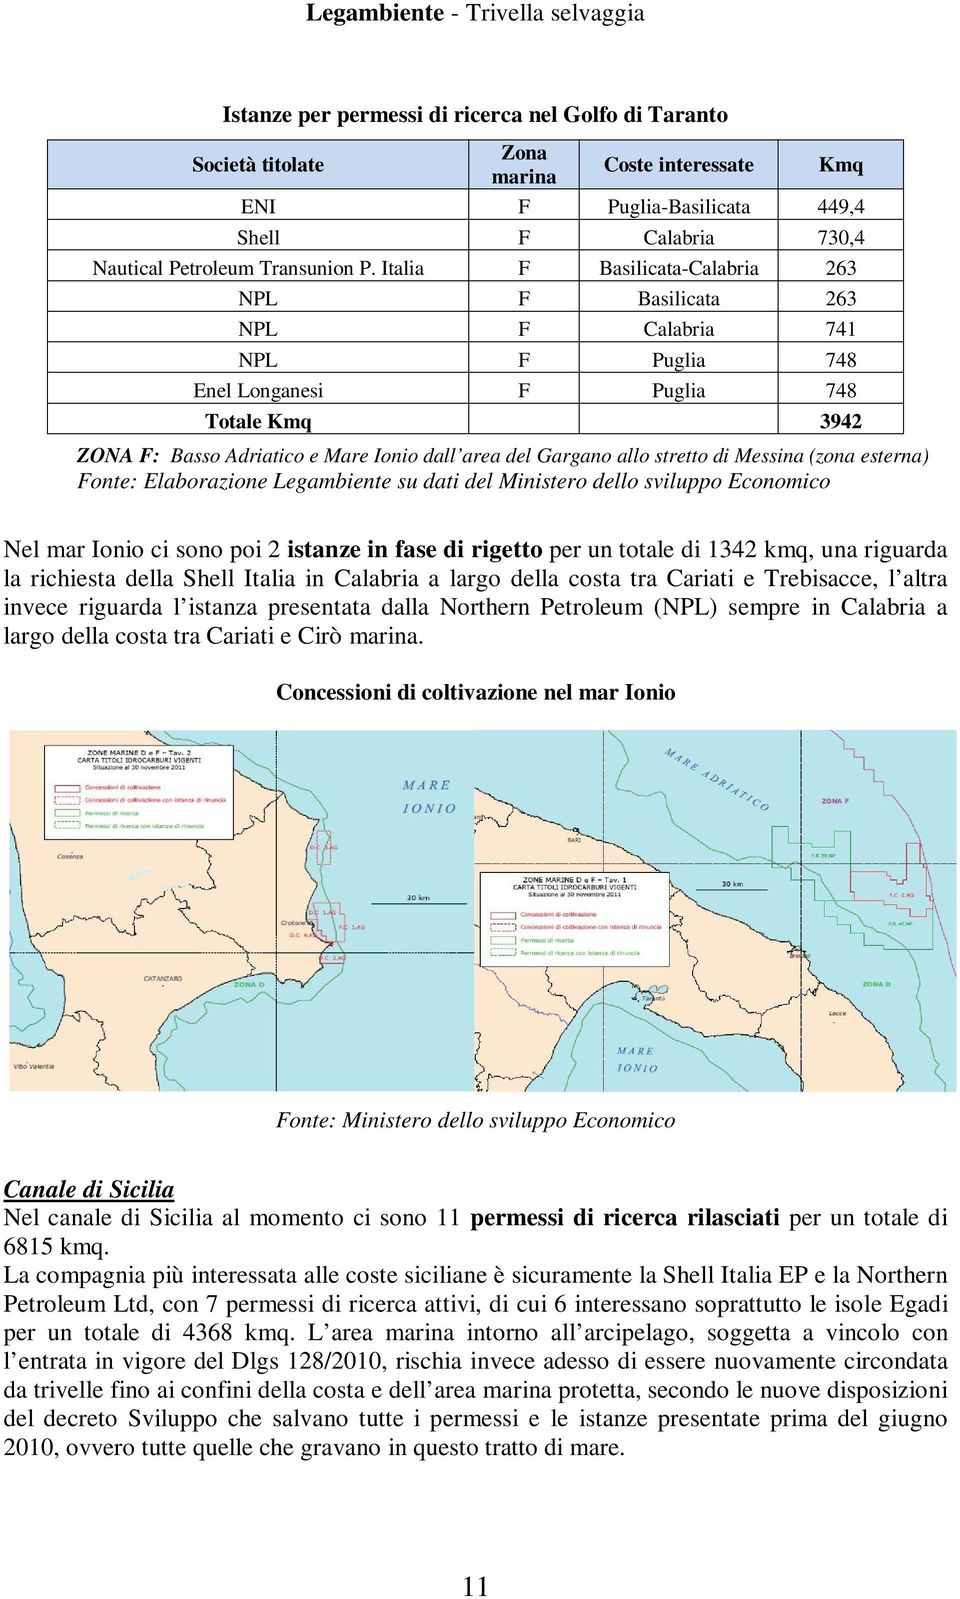 stretto di Messina (zona esterna) Fonte: Elaborazione Legambiente su dati del Ministero dello sviluppo Economico Nel mar Ionio ci sono poi 2 istanze in fase di rigetto per un totale di 1342 kmq, una